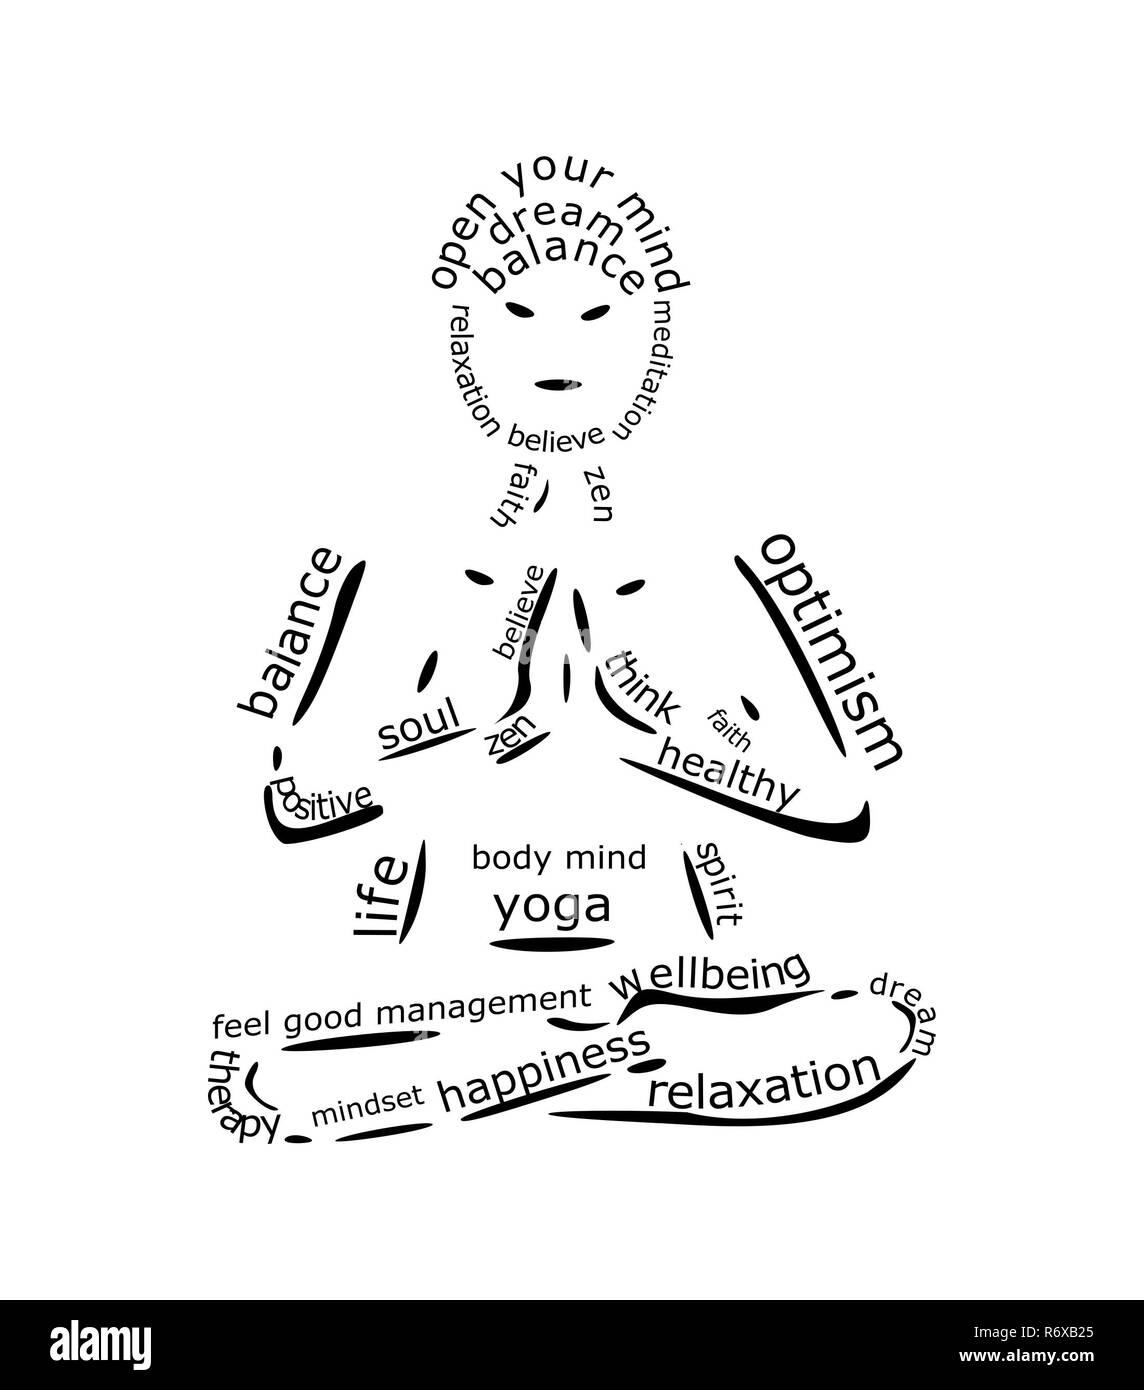 Yoga Wordcloud on white background - illustration Stock Photo